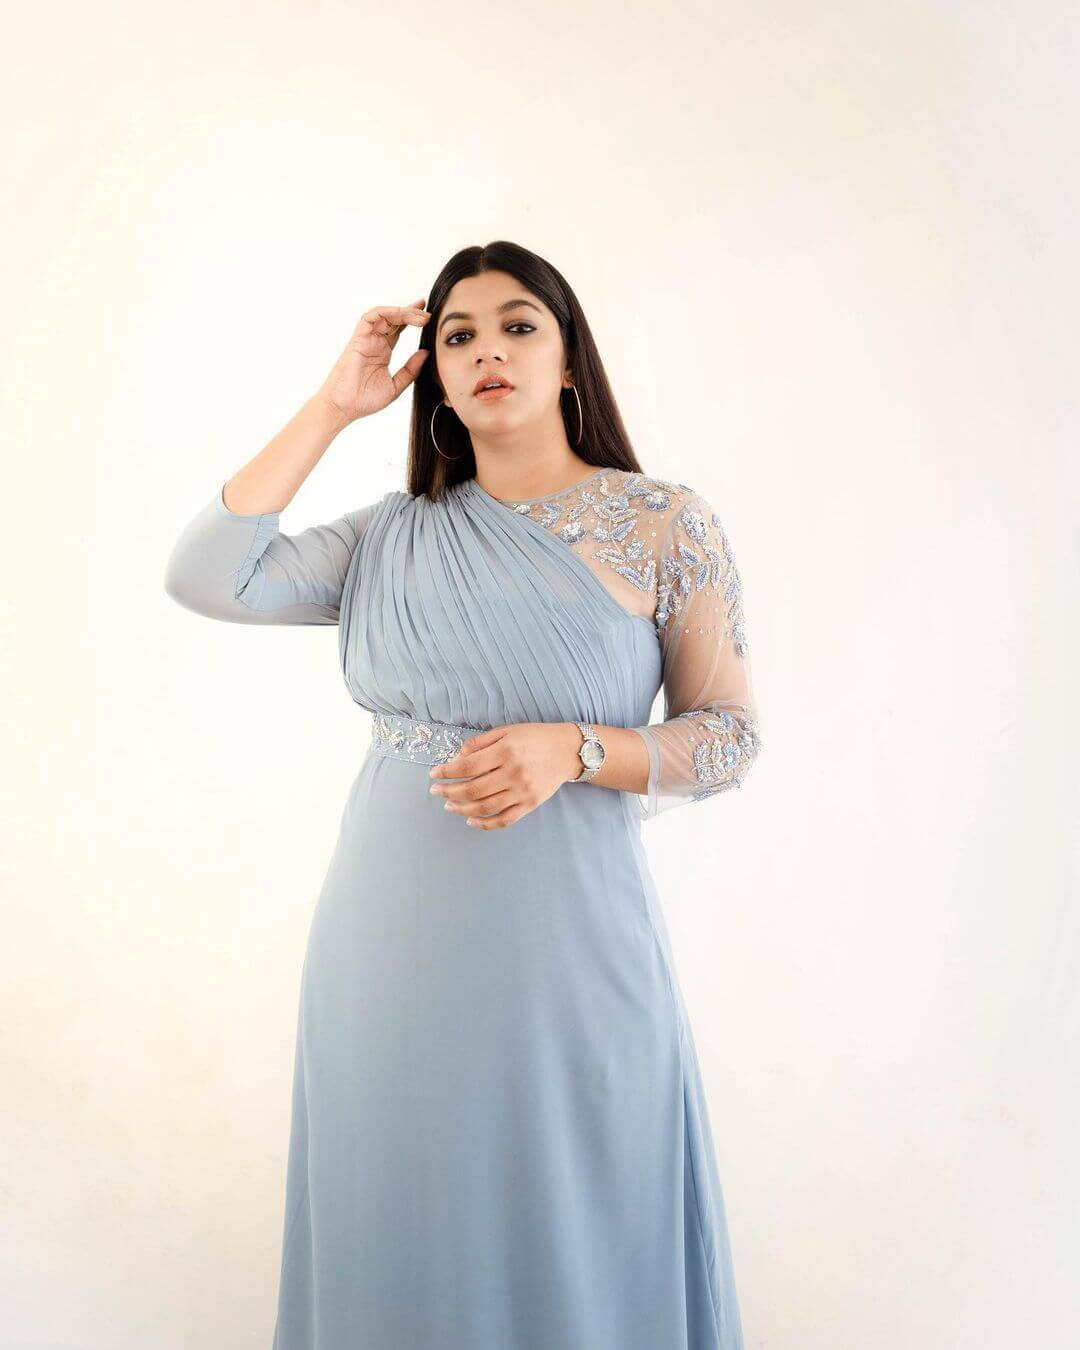 Gorgeous Aparna Balamurali  In Powder Blue Embellished Gown